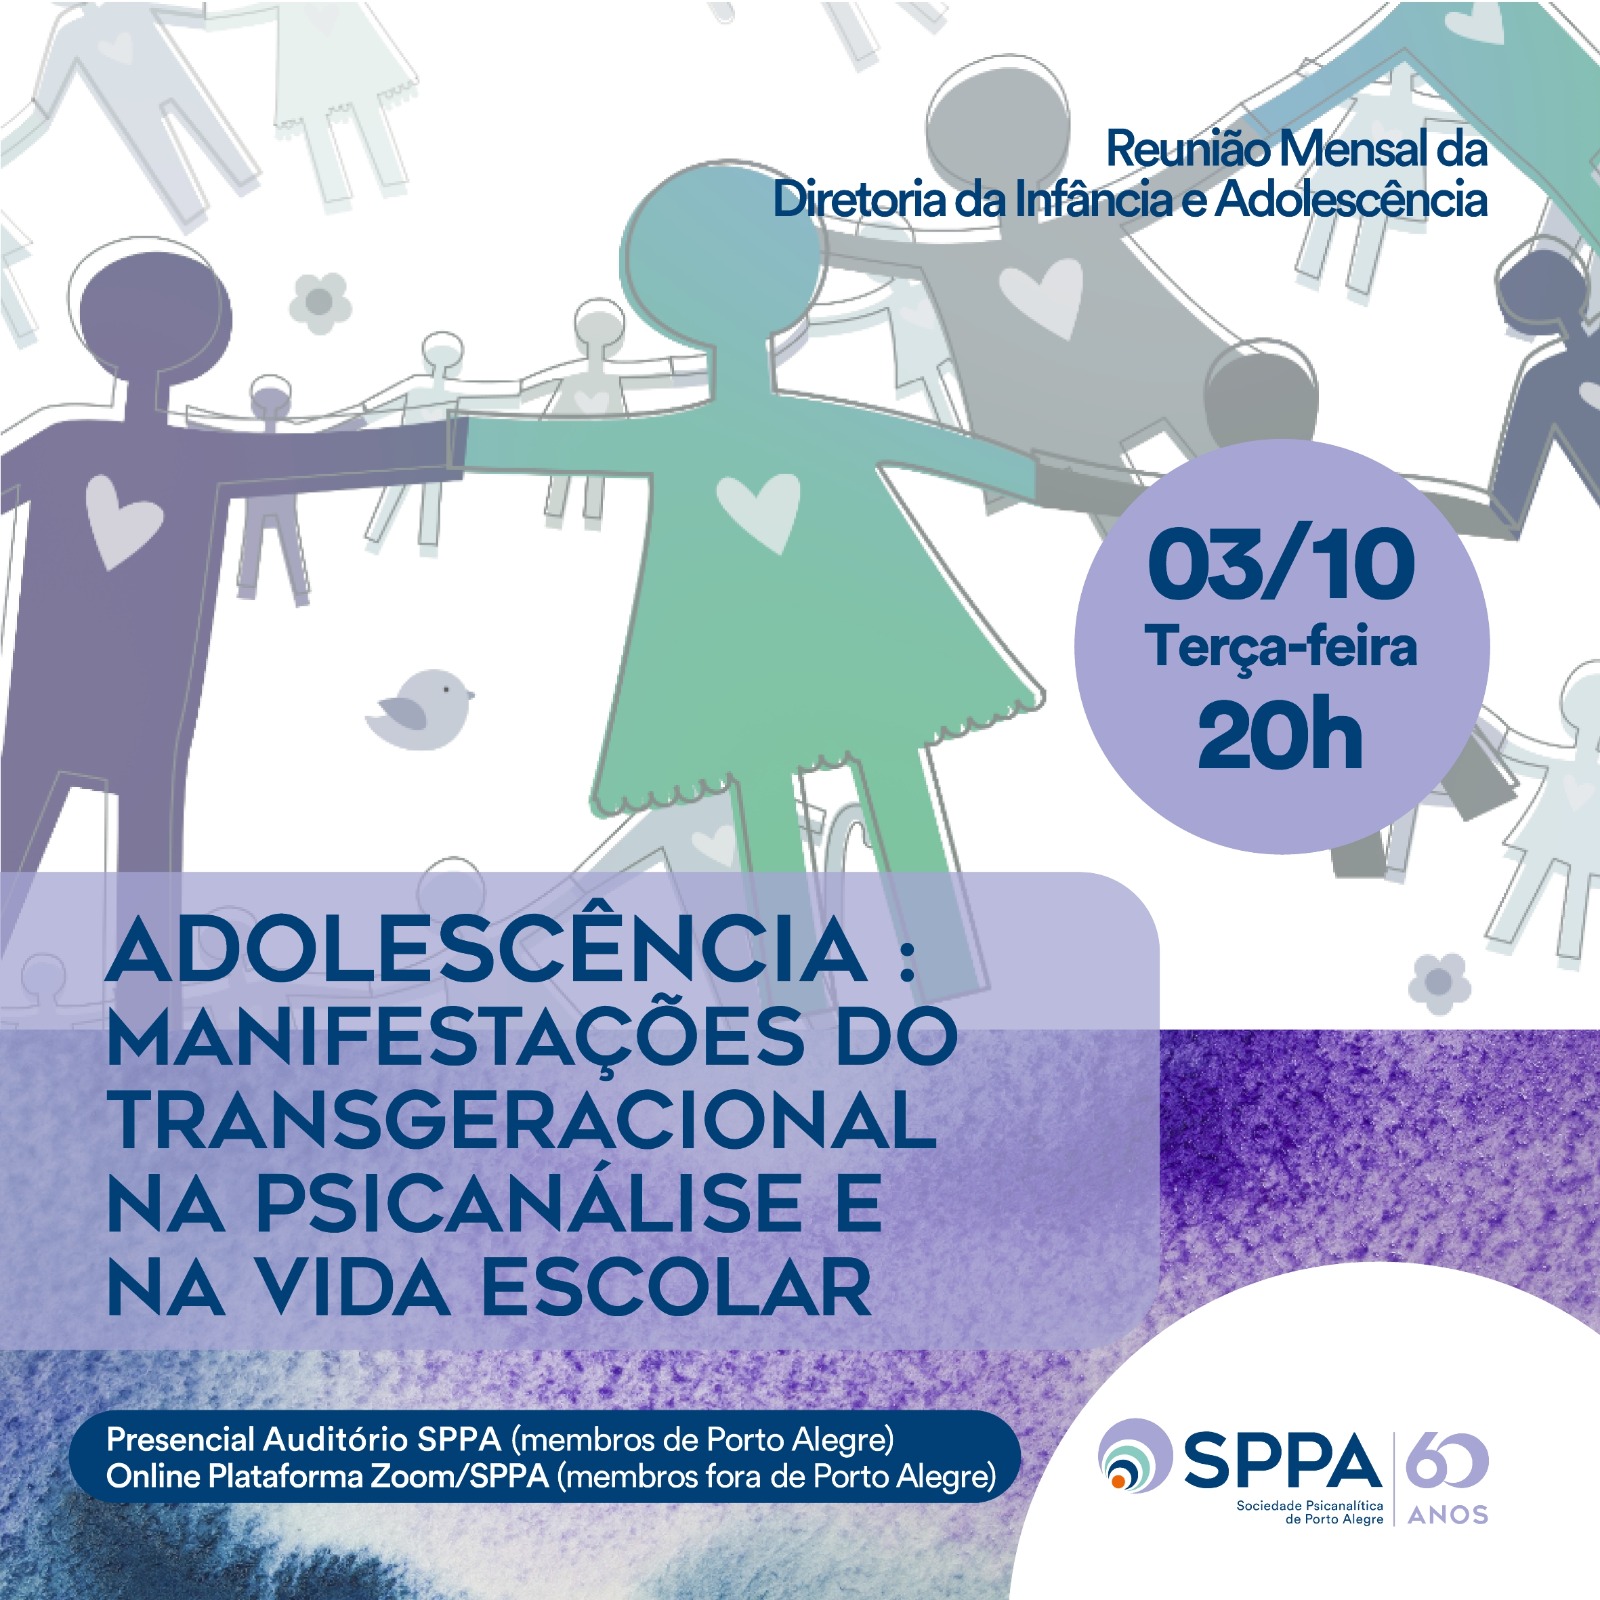 Reunião Mensal da Diretoria da Infância e Adolescência” Adolescência: Manifestações do transgeracional: na psicanálise e na vida escolar”